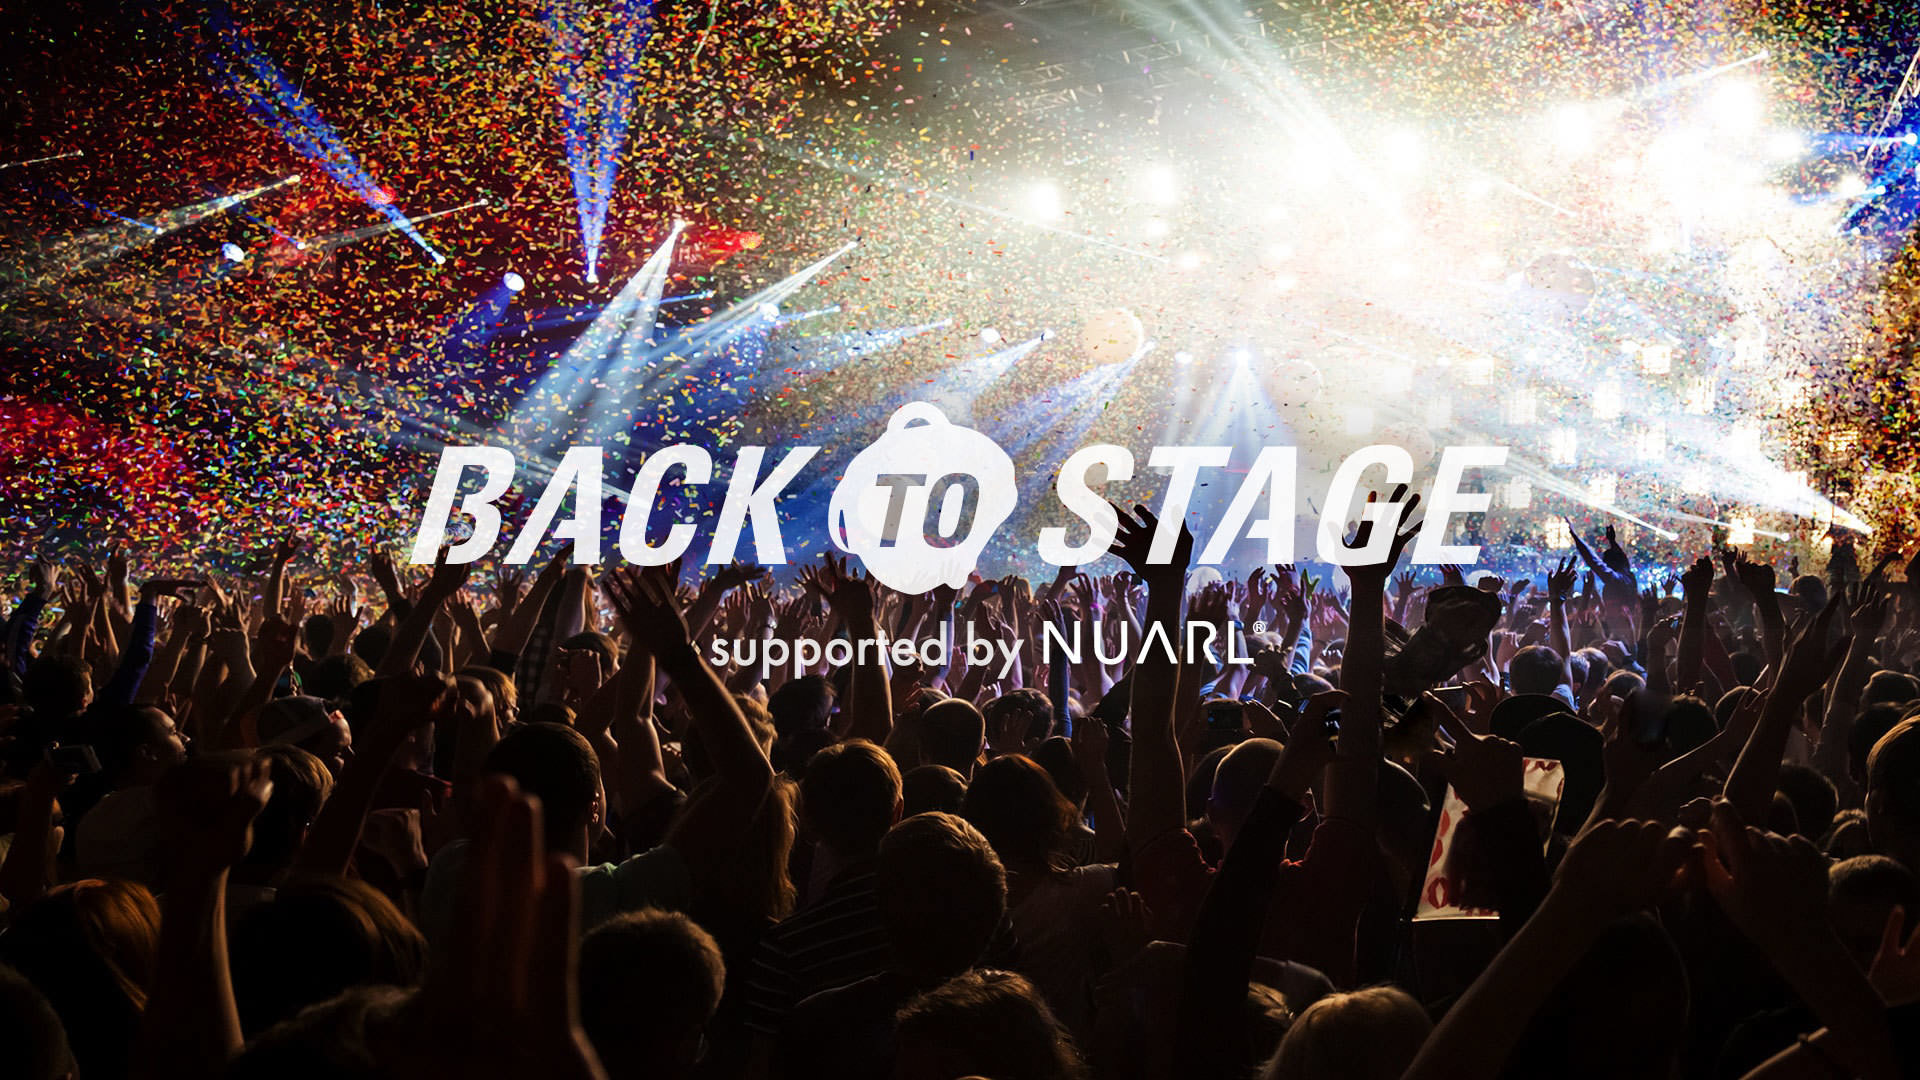 イヤホンブランドNUARL、ミュージシャンを応援する
オンラインプロモーション『BACK TO STAGE』を5月10日より開始